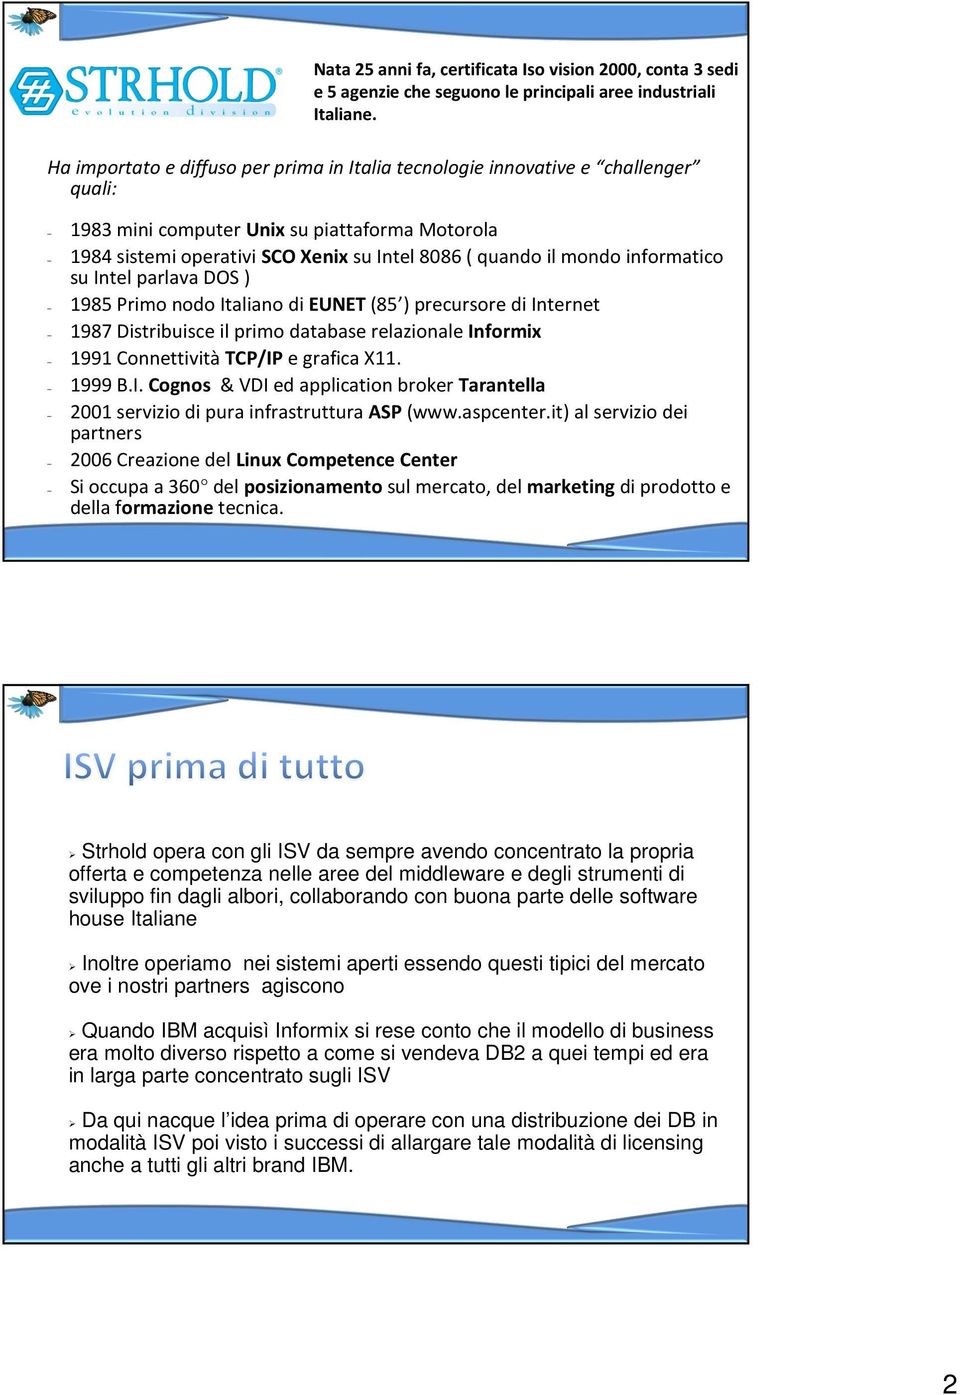 informatico suintel parlavados ) 1985 Primo nodo Italiano di EUNET (85 ) precursore di Internet 1987 Distribuisce il primo database relazionale Informix 1991 Connettività TCP/IP e grafica X11. 1999 B.